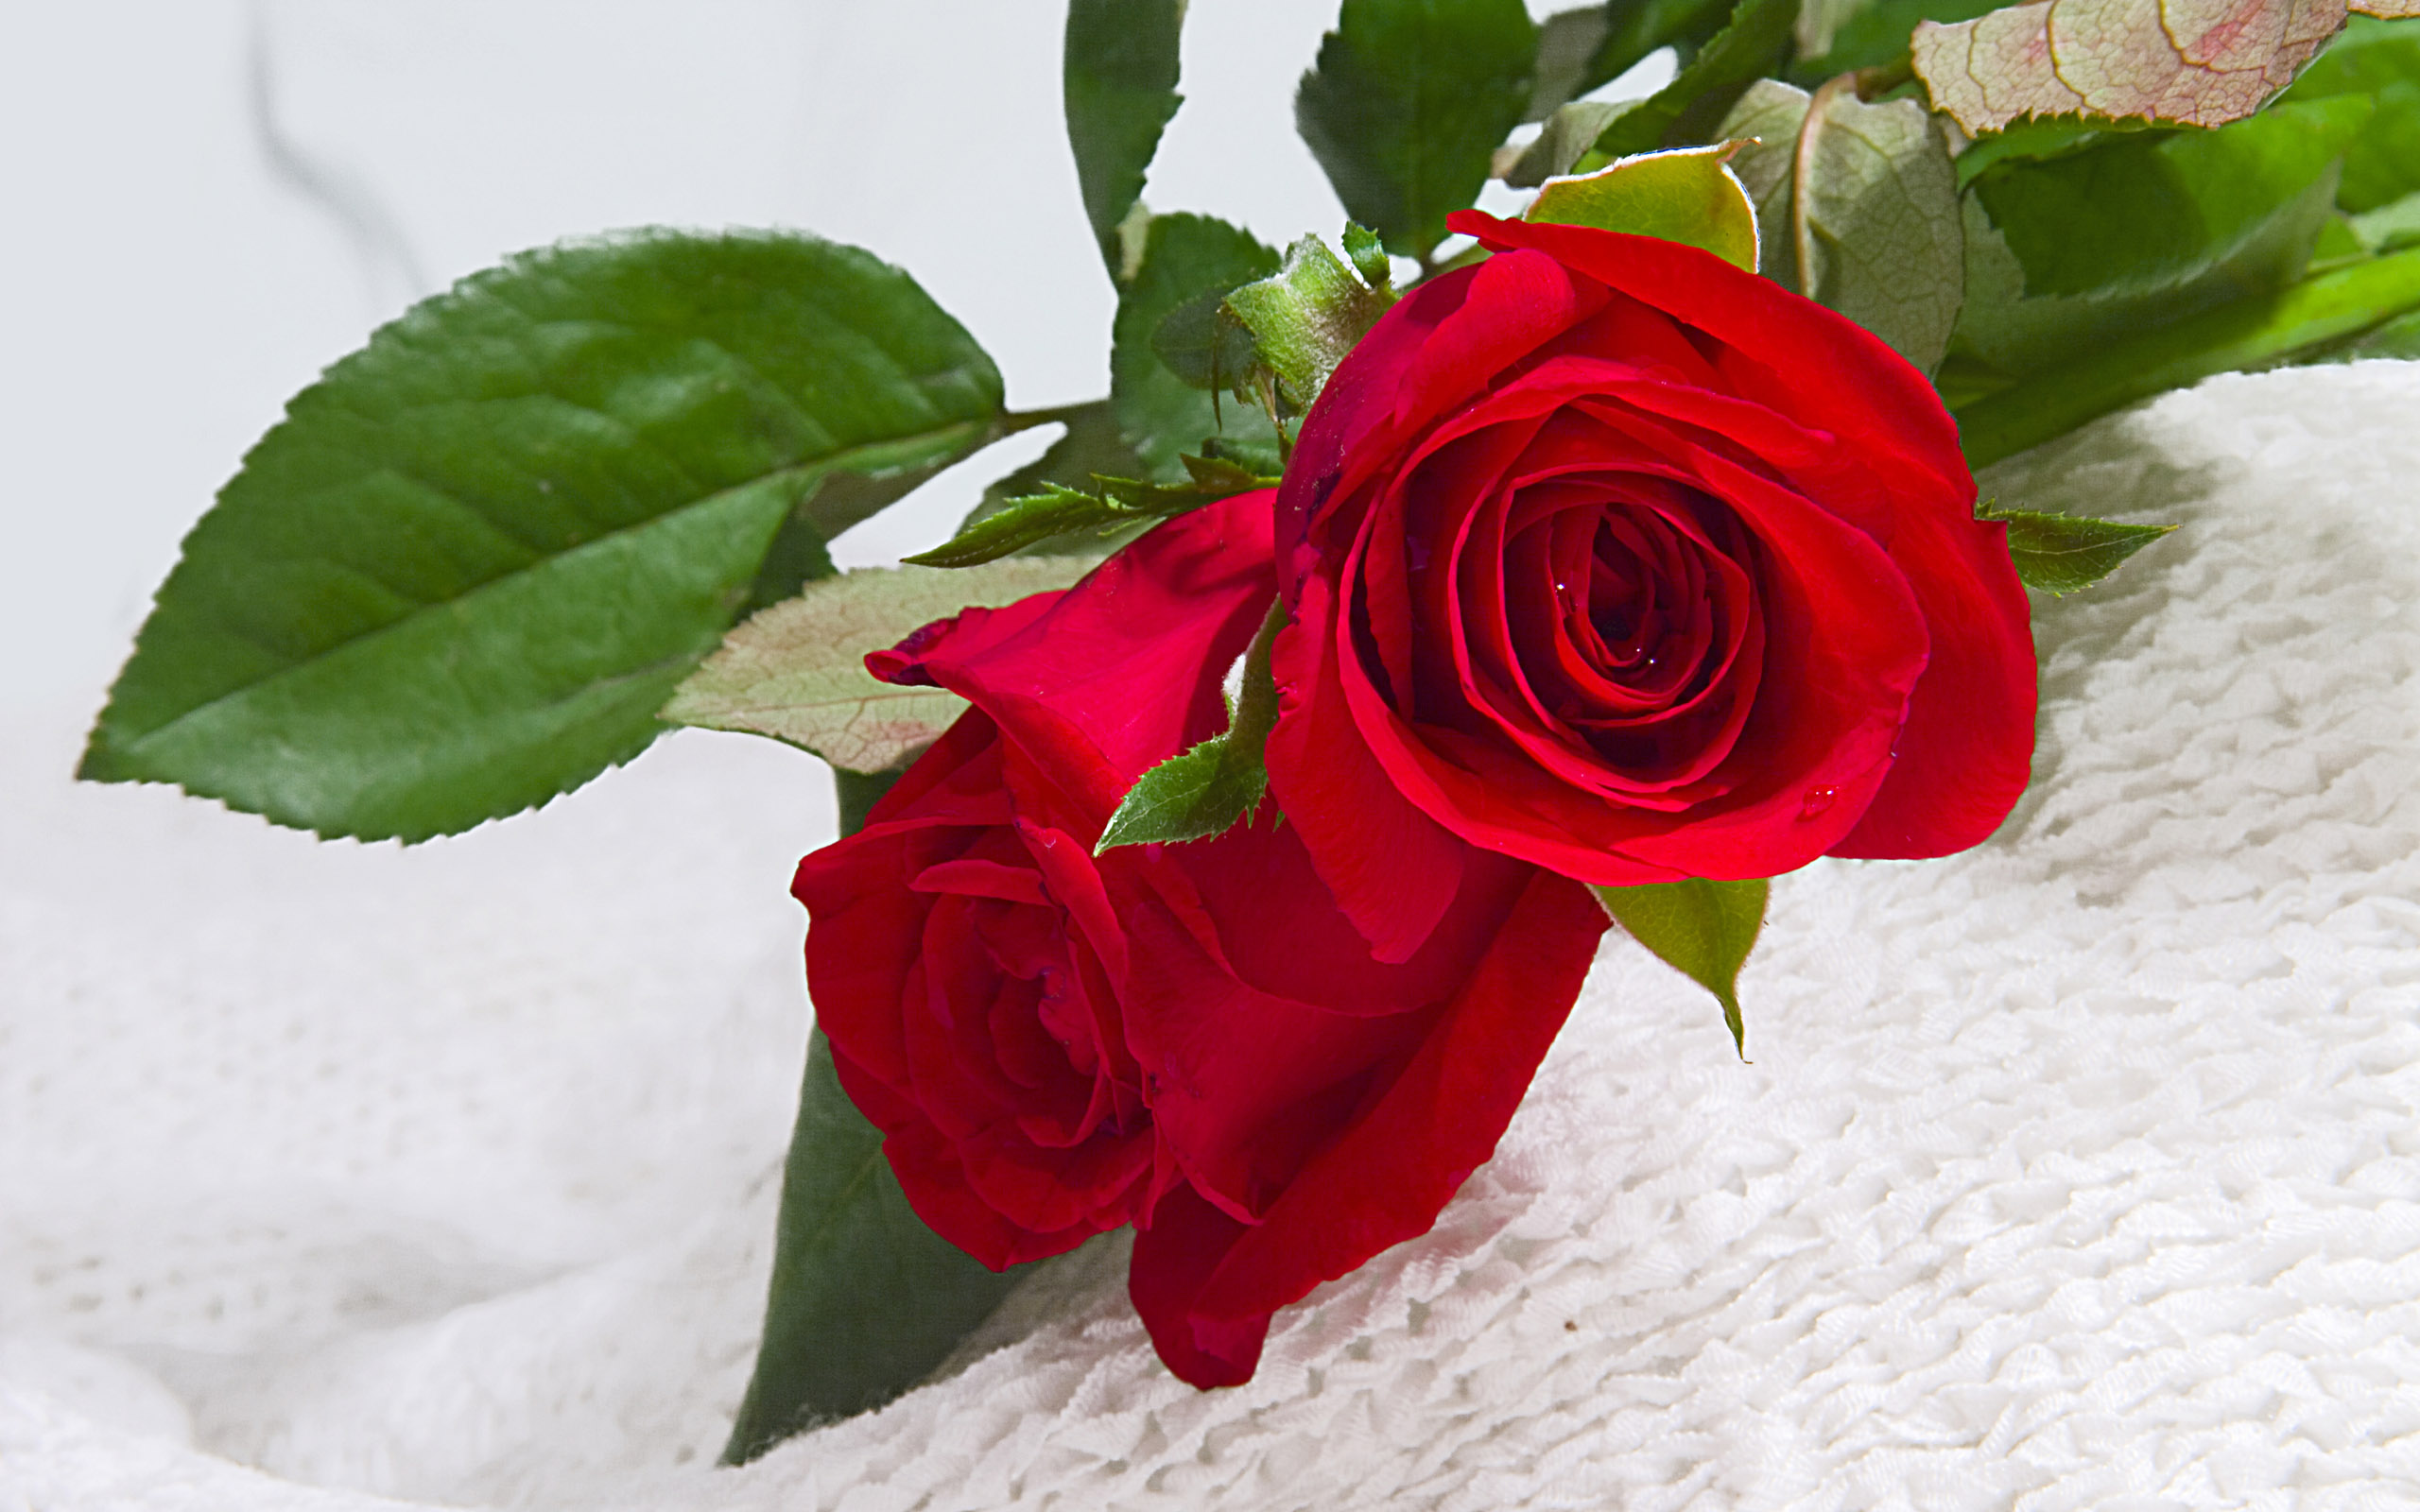 Thưởng thức hình ảnh về hoa đẹp tặng người yêu, cho thấy tình yêu của bạn đối với người bạn yêu quý. Họa tiết hoa tuyệt đẹp sẽ mang đến cho bạn cảm giác yêu thương và sự kết nối tuyệt vời giữa hai người.